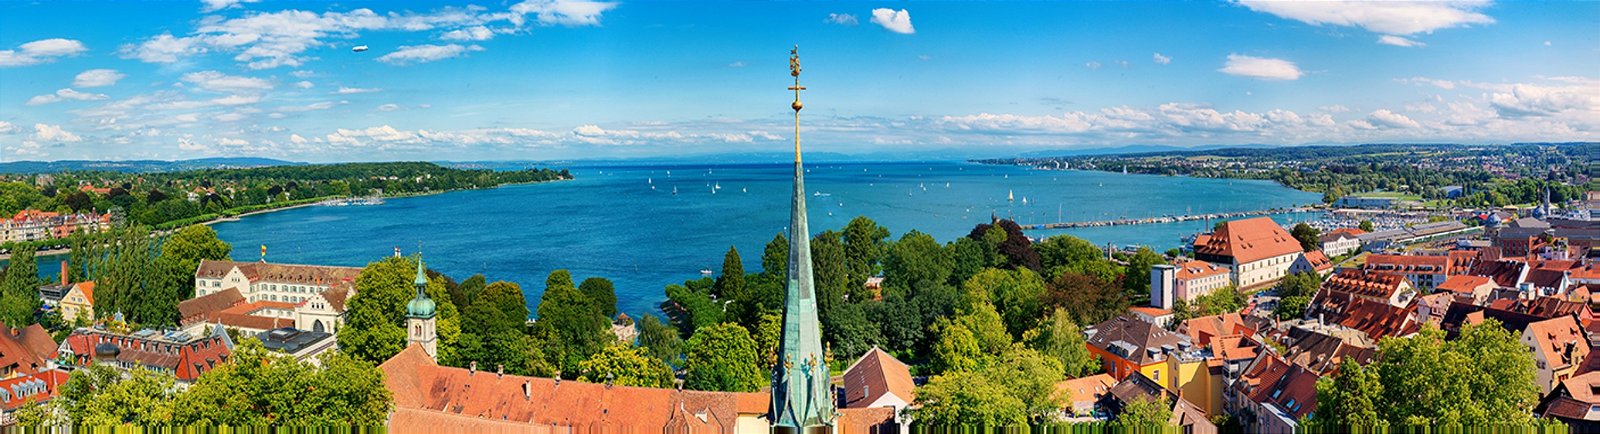 Städtereise nach Konstanz am Bodensee